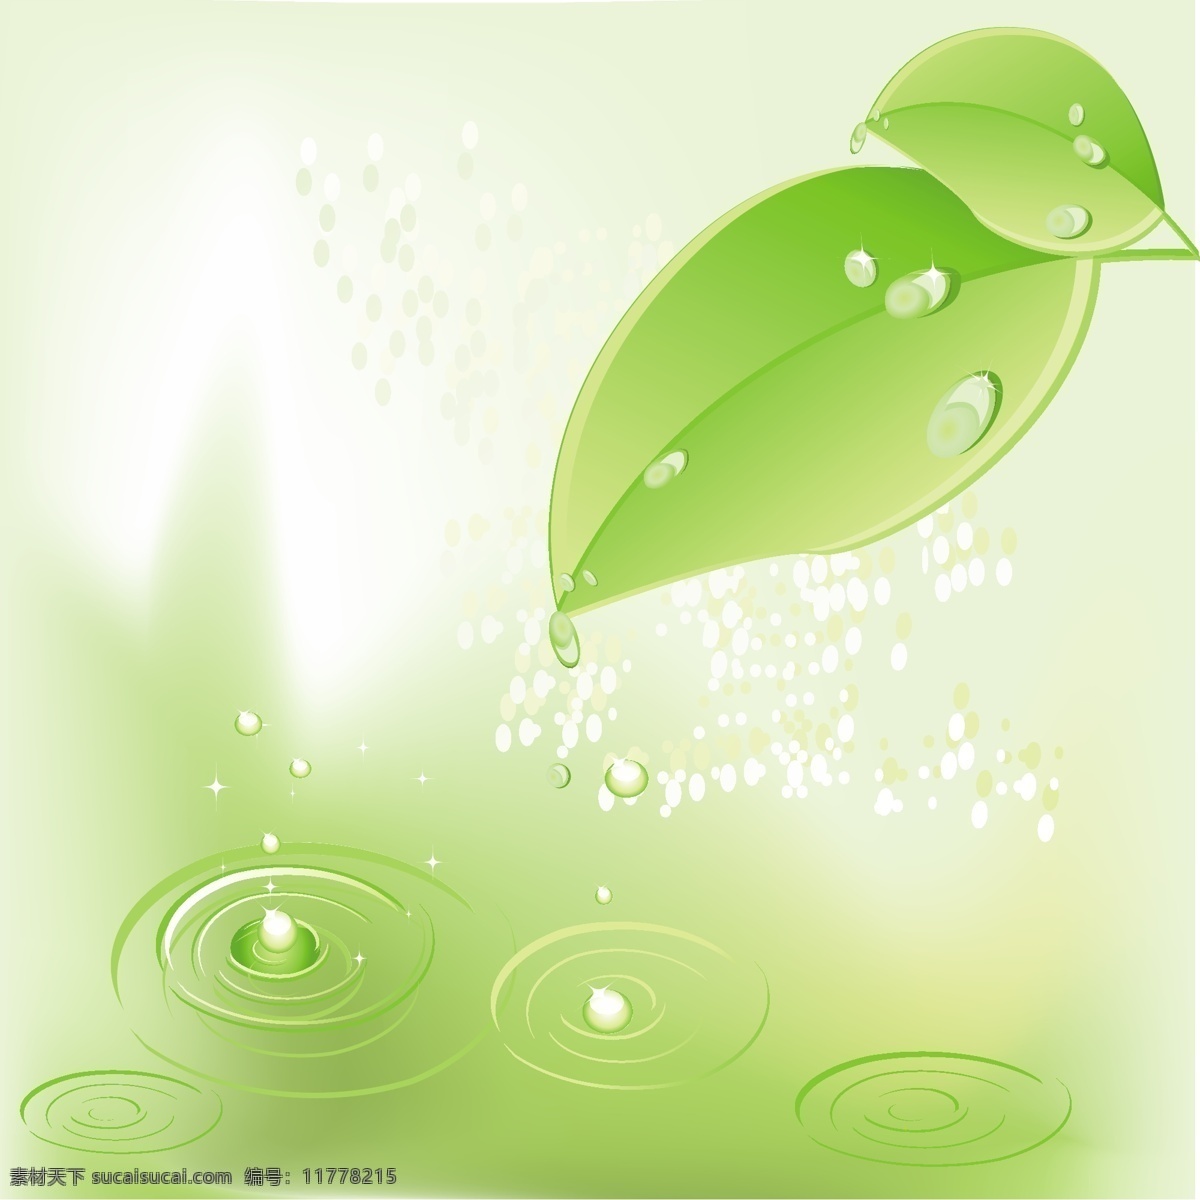 矢量 瓢虫 绿色 叶 材料 液滴 绿 滴 矢量图 其他矢量图